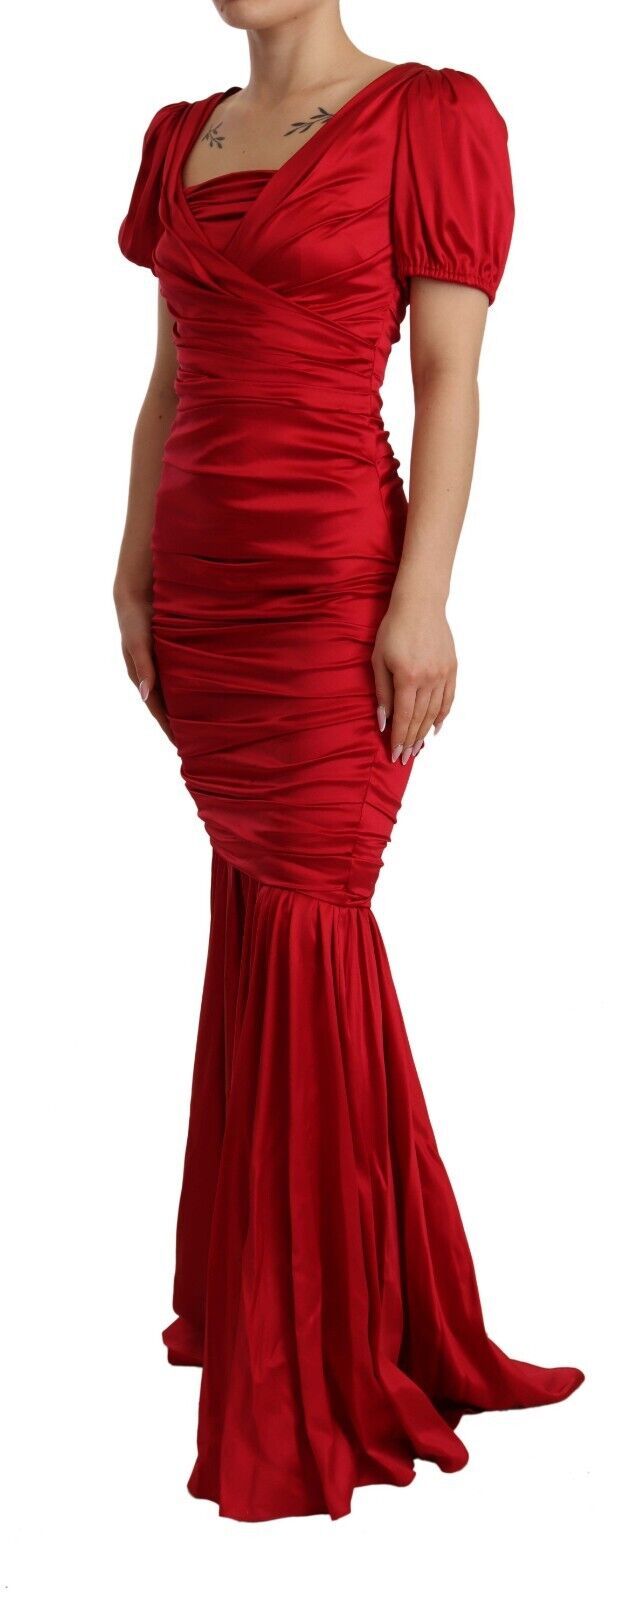 Elegant Red Silk Stretch Mermaid Dress